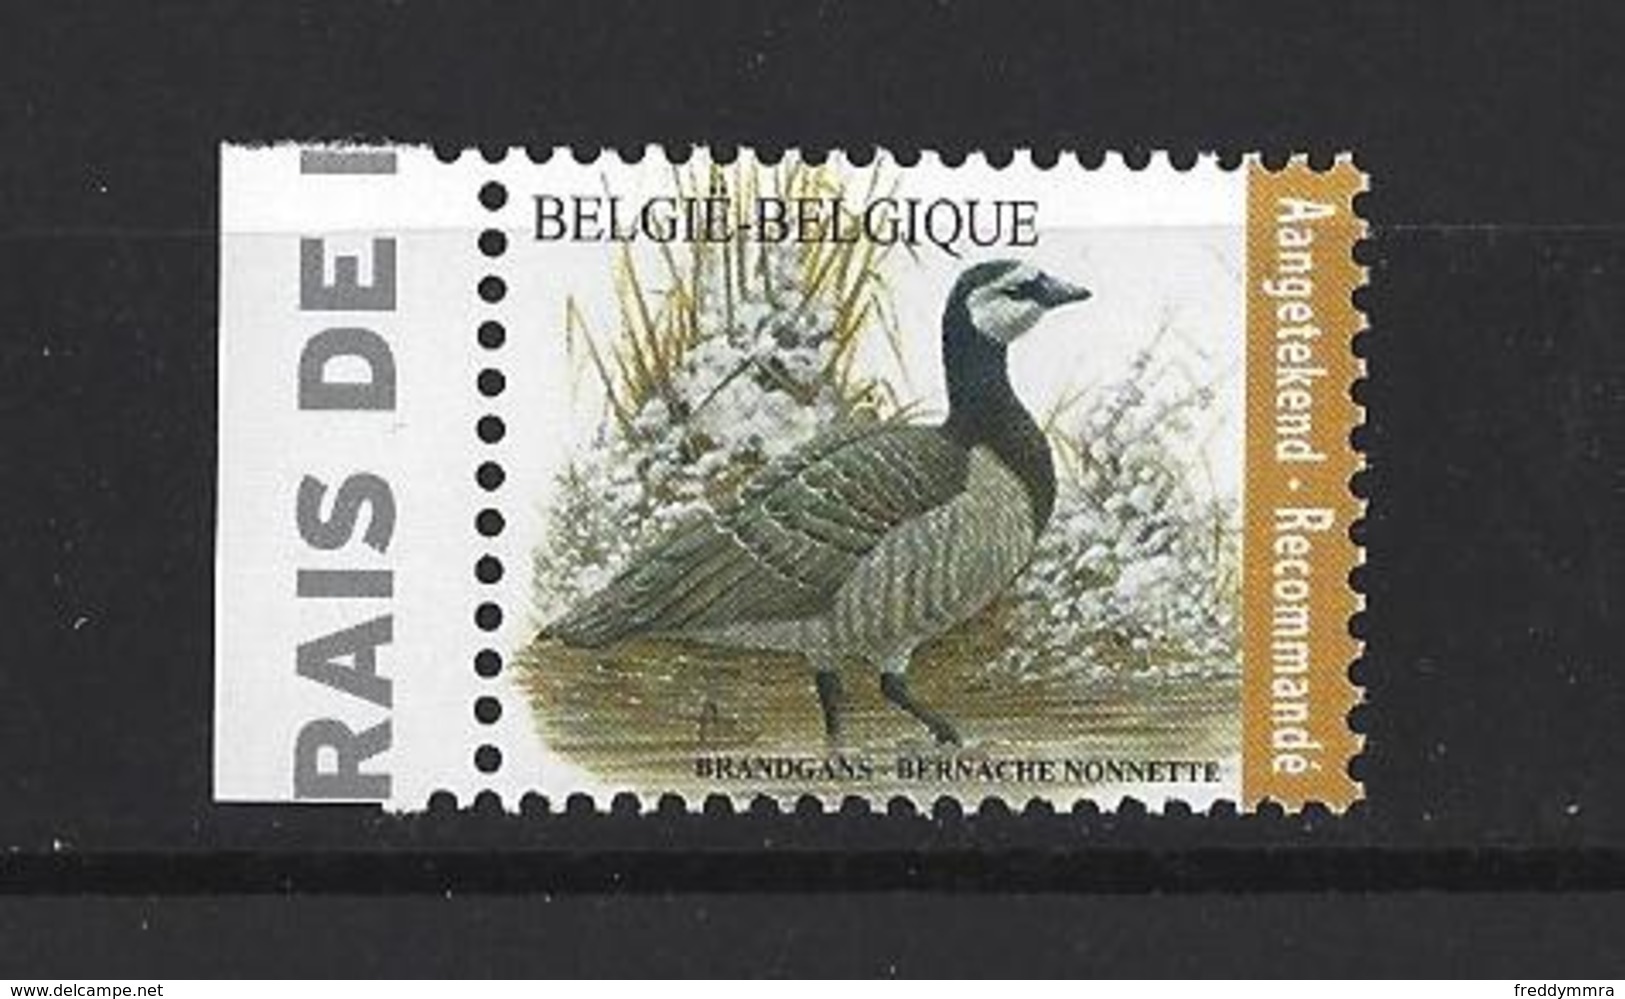 Belgique: Nouveauté 2020 (Pour Recommandé) Bernache Nonnette ** - 1985-.. Oiseaux (Buzin)